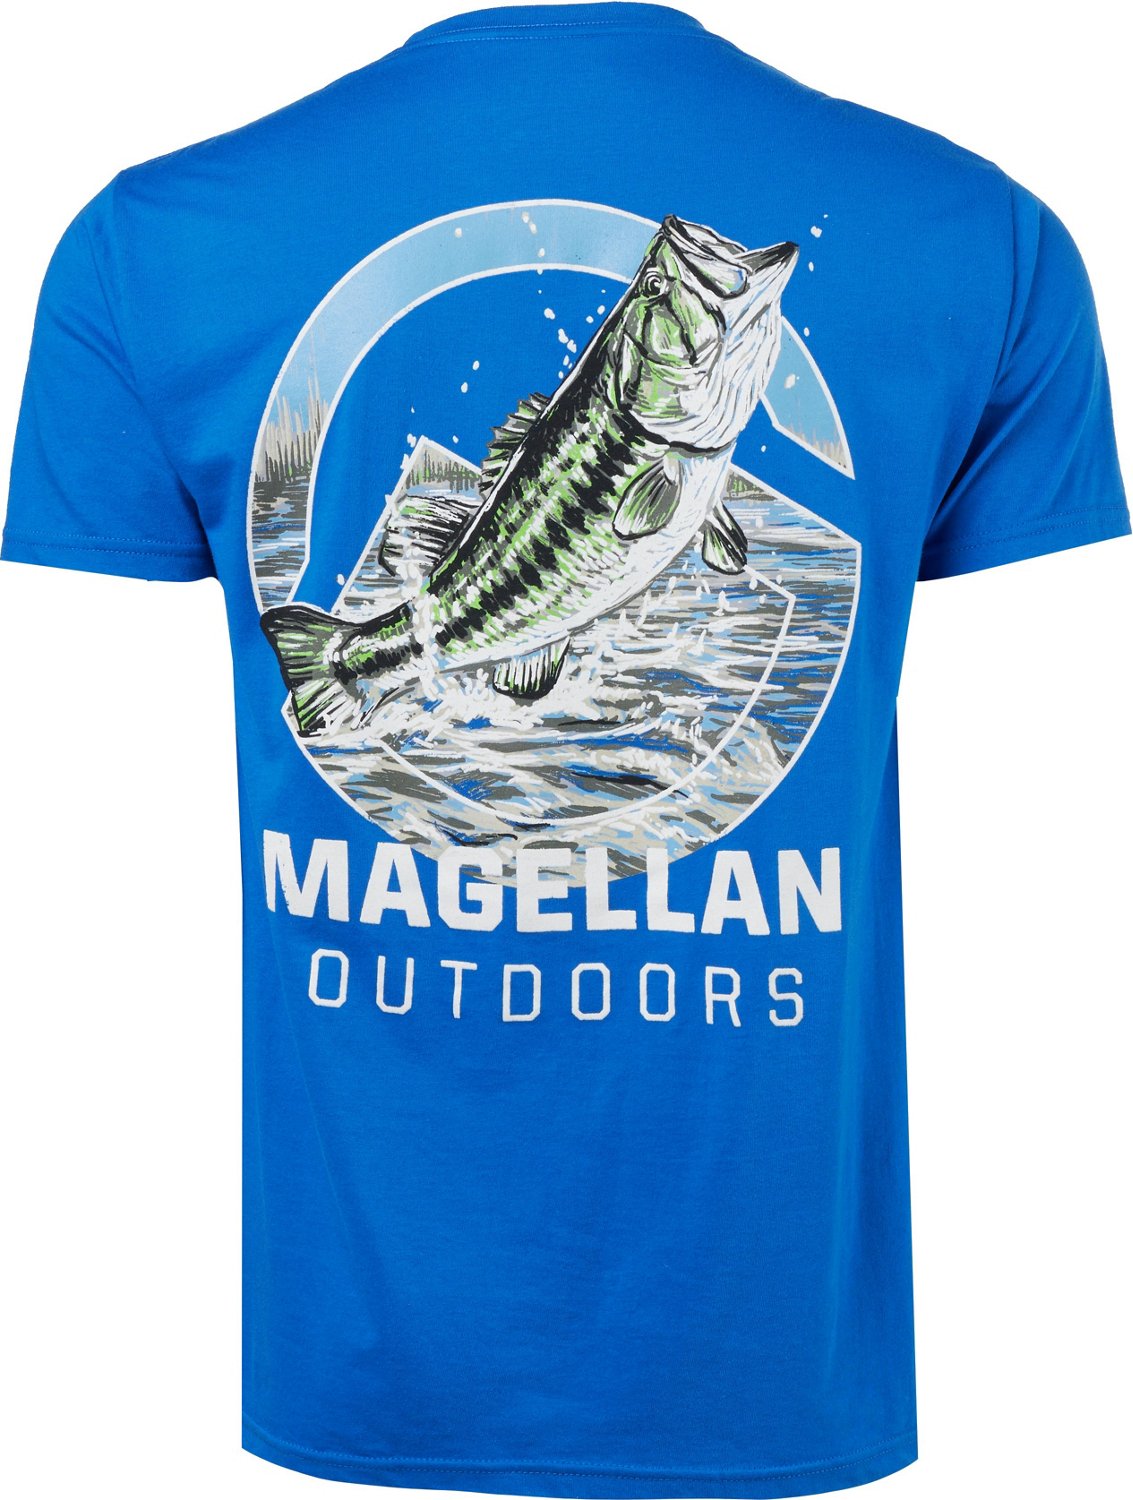 Academy Sports + Outdoors Magellan Outdoors Men's Bass T-shirt